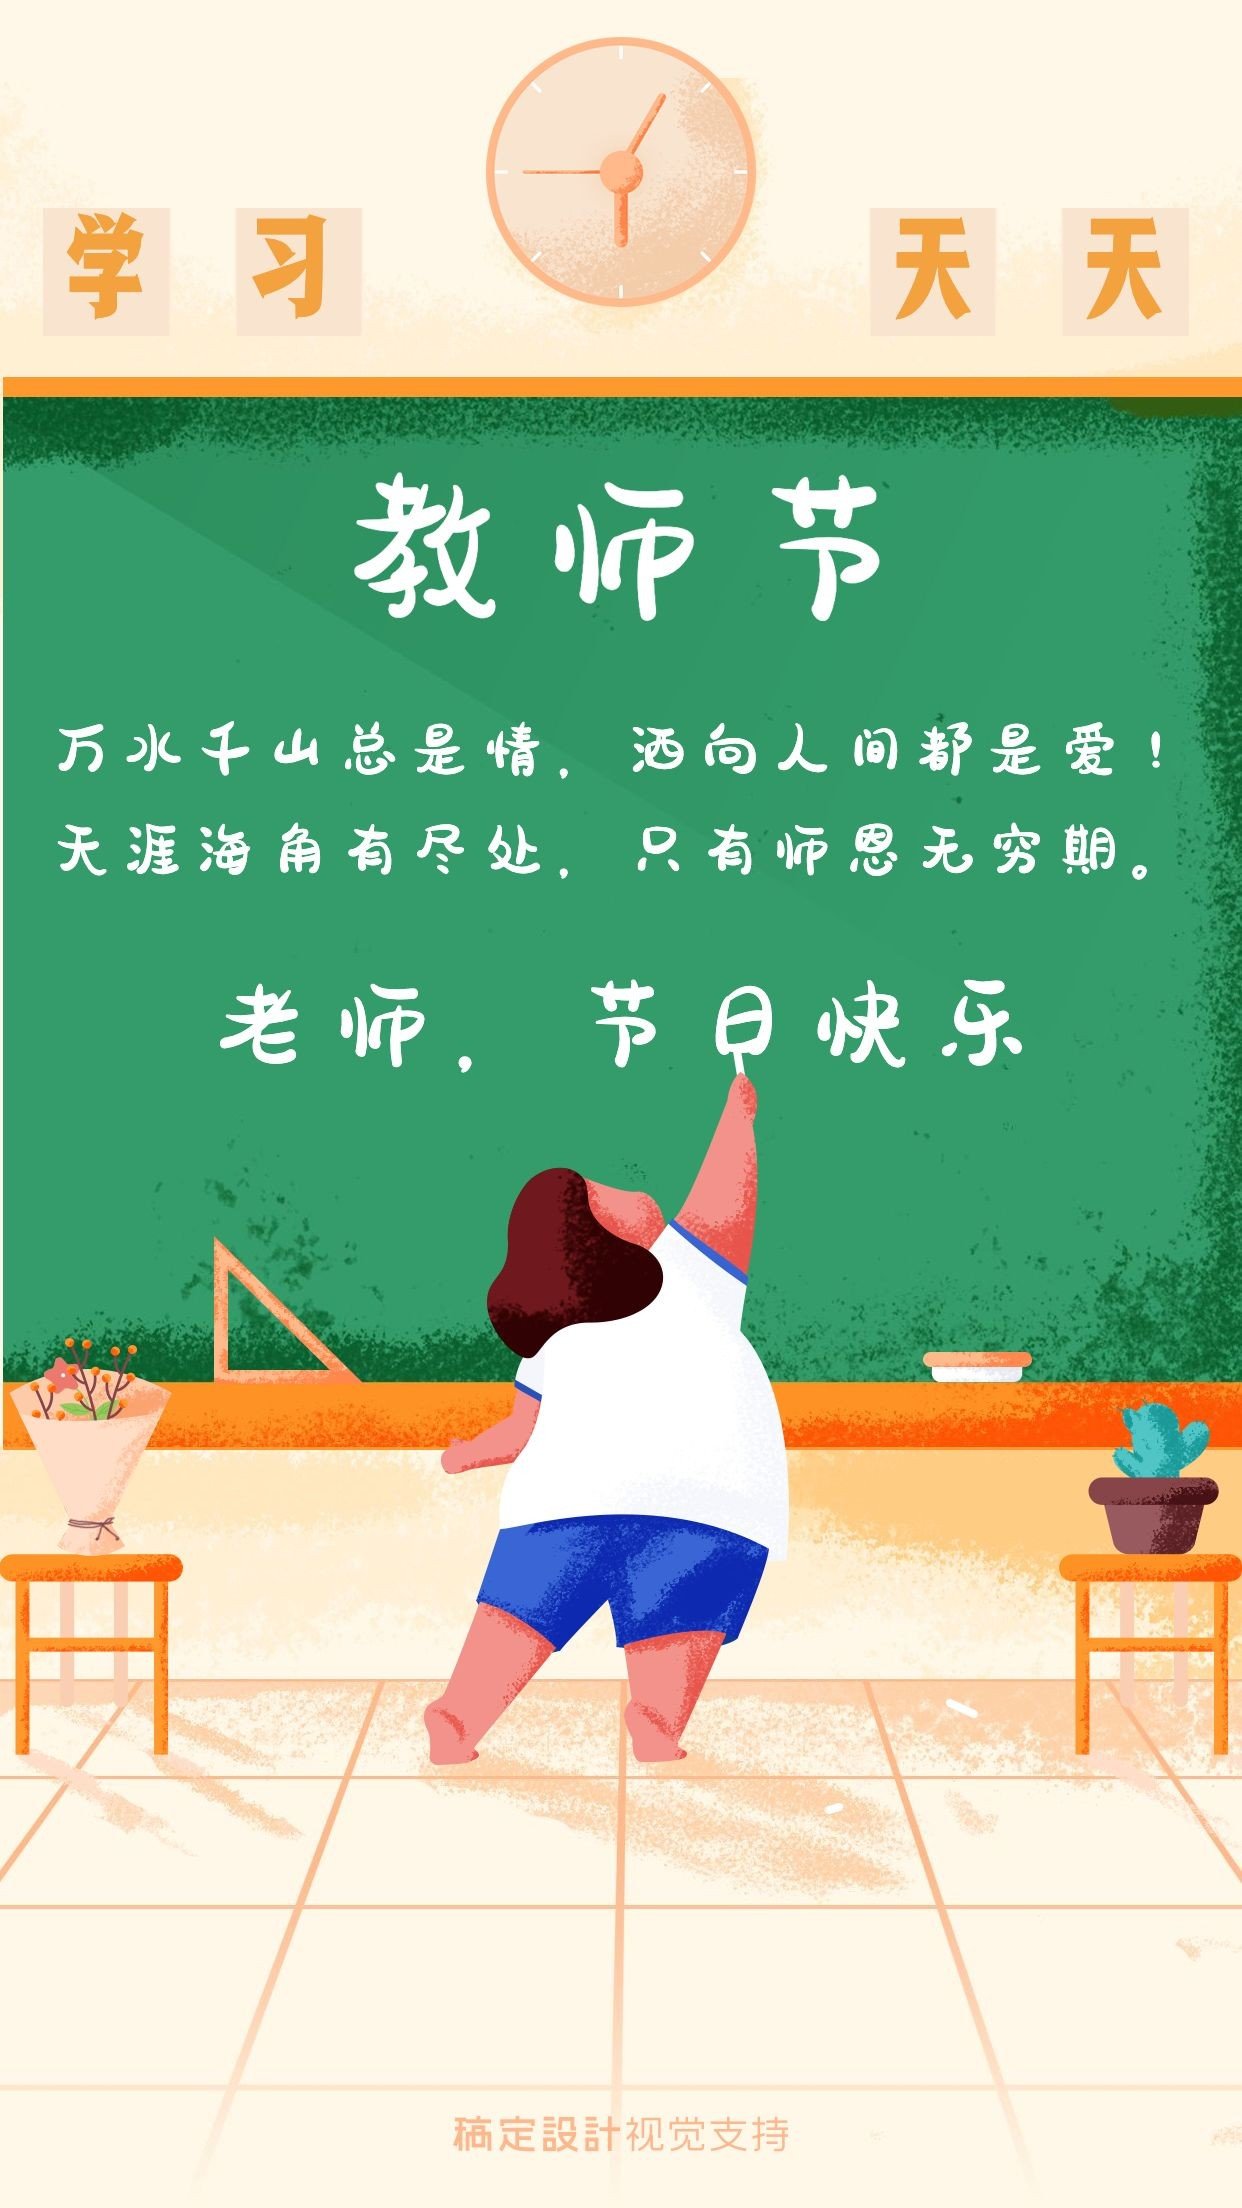 教师节祝福海报